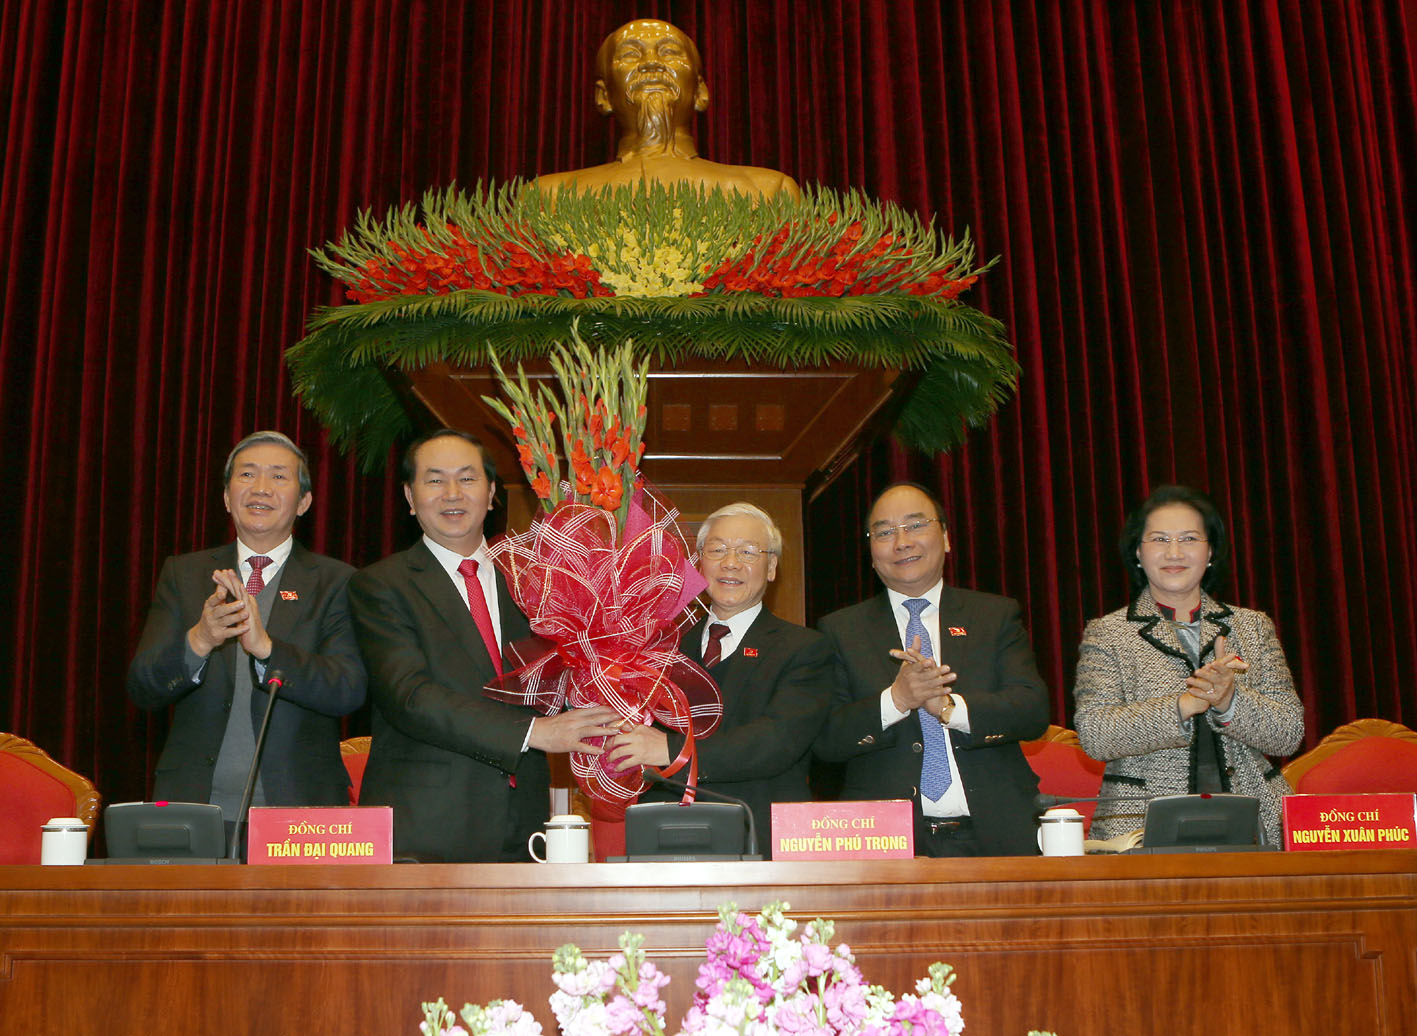 Tặng hoa chúc mừng ông Nguyễn Phú Trọng được bầu làm Tổng Bí thư Ban chấp hành Trung ương khóa XII.